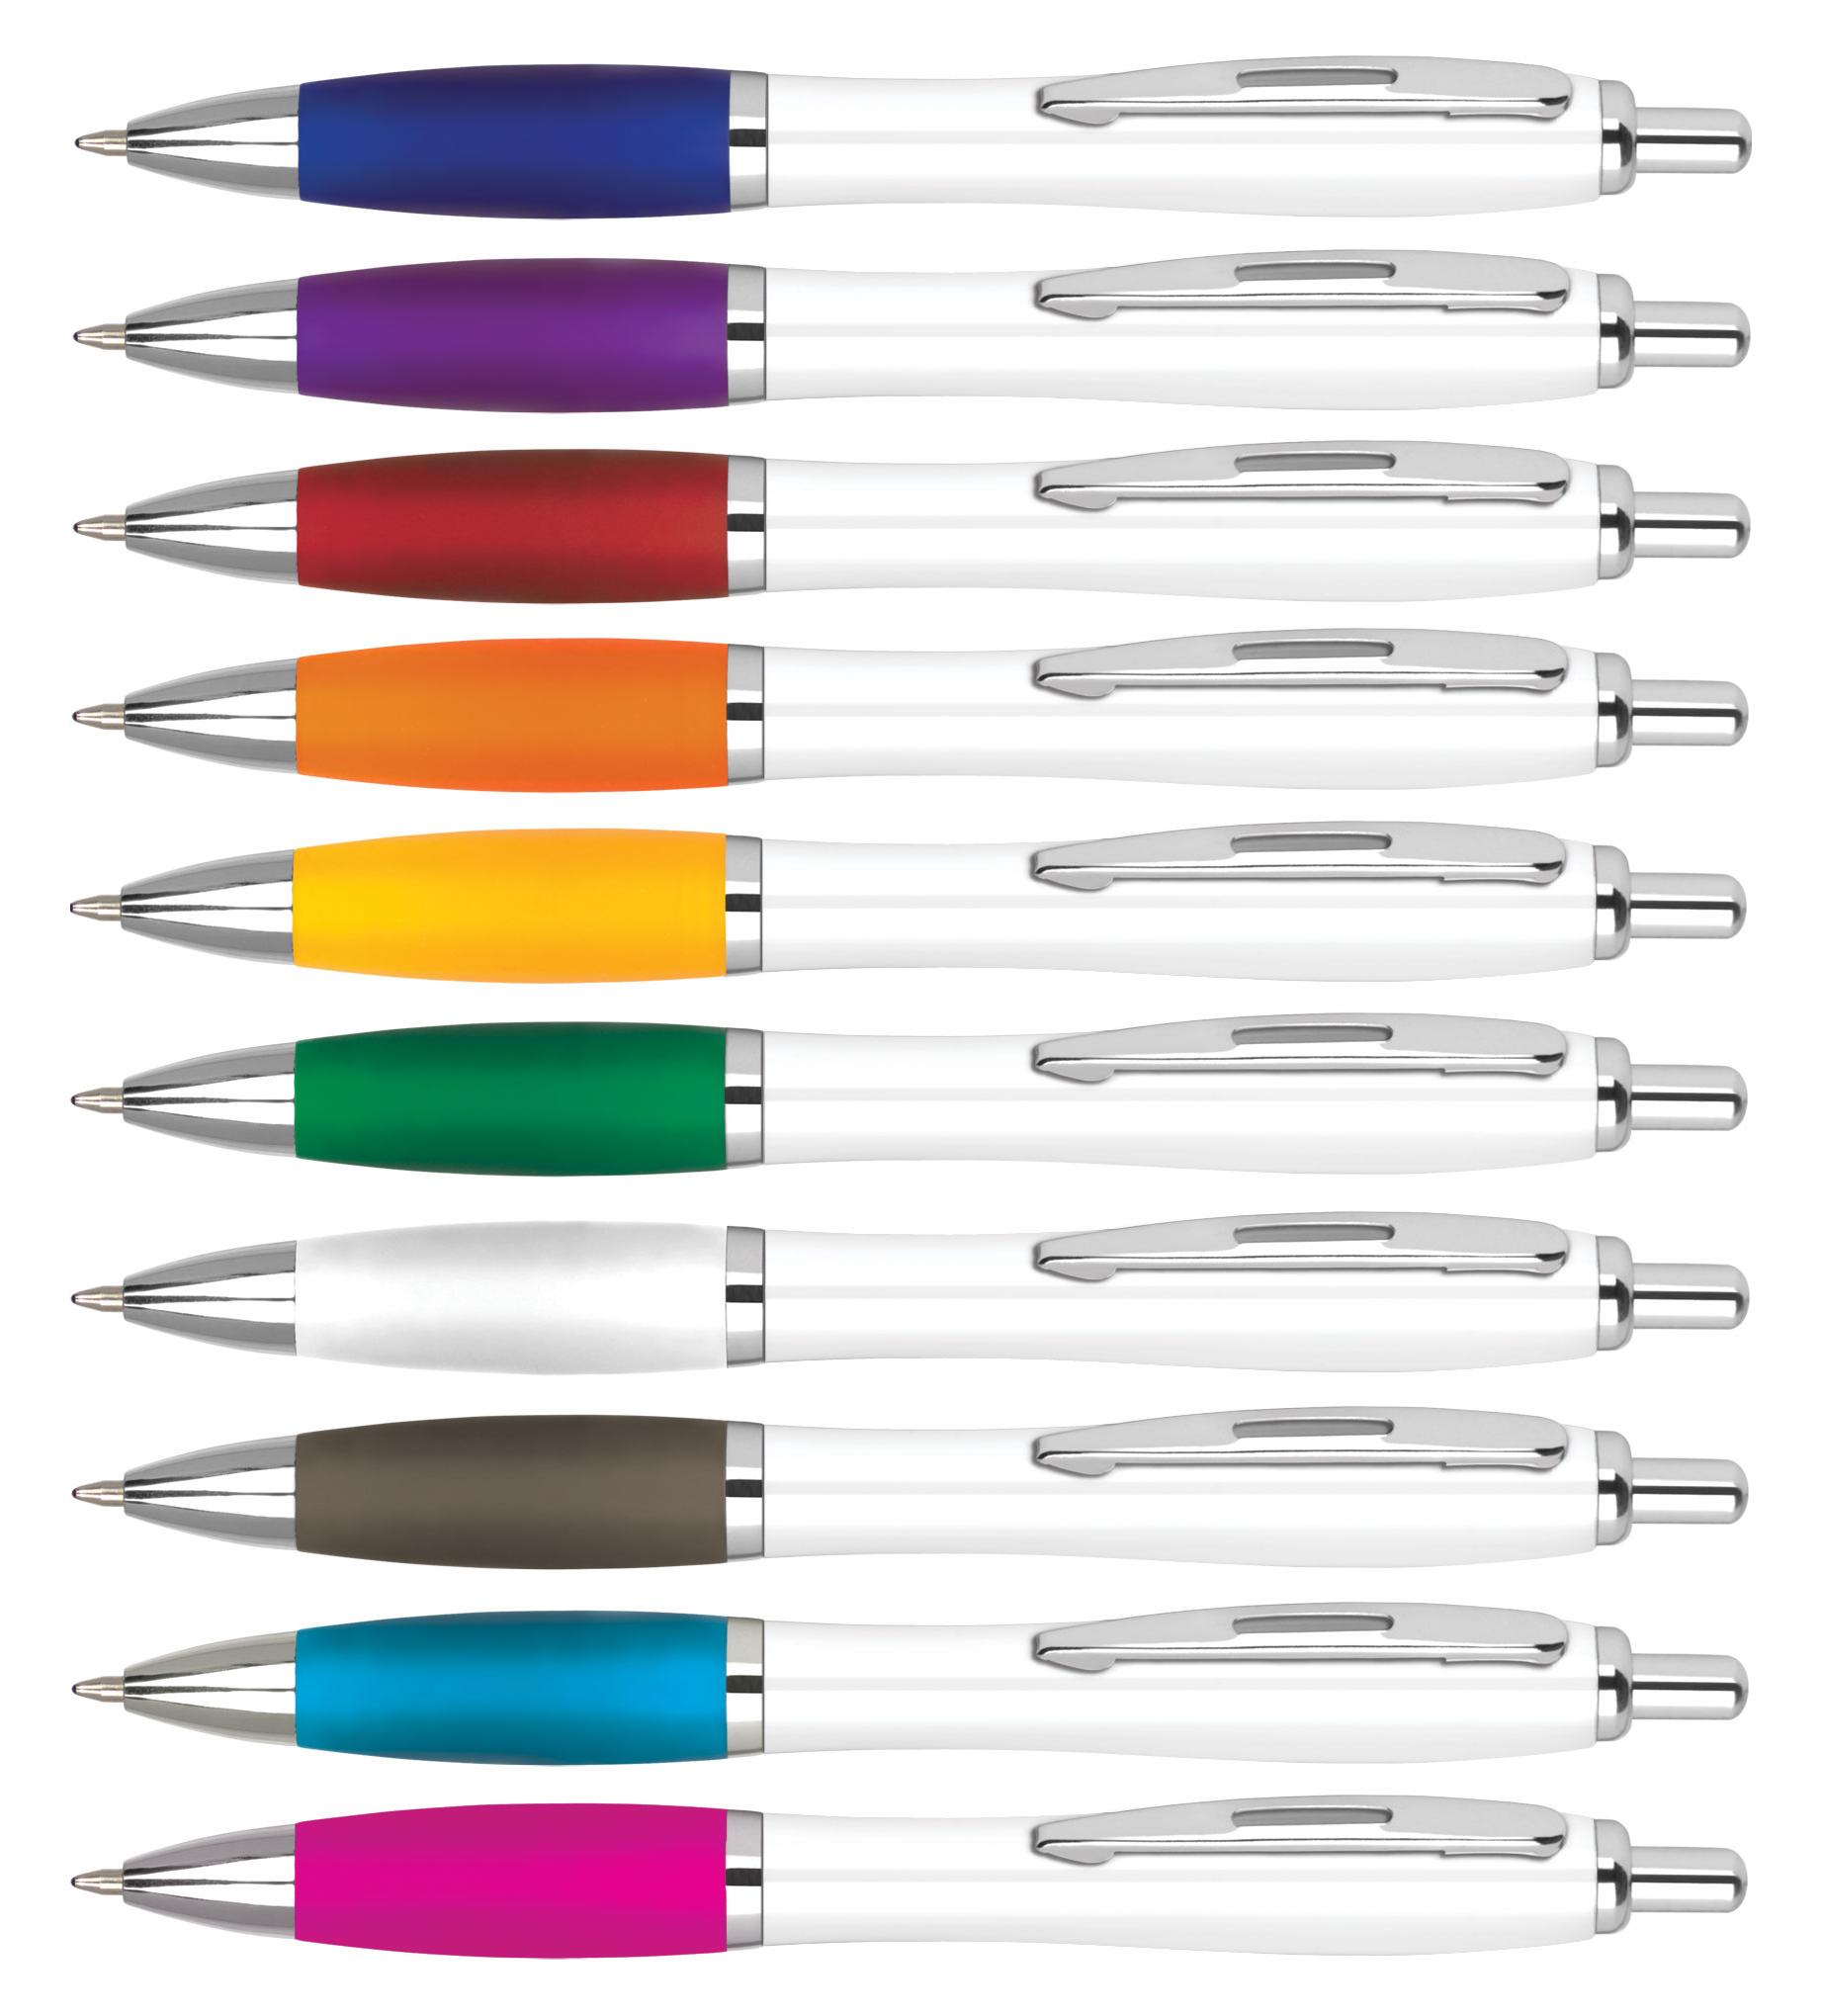 Single colour logo printed curvy pen